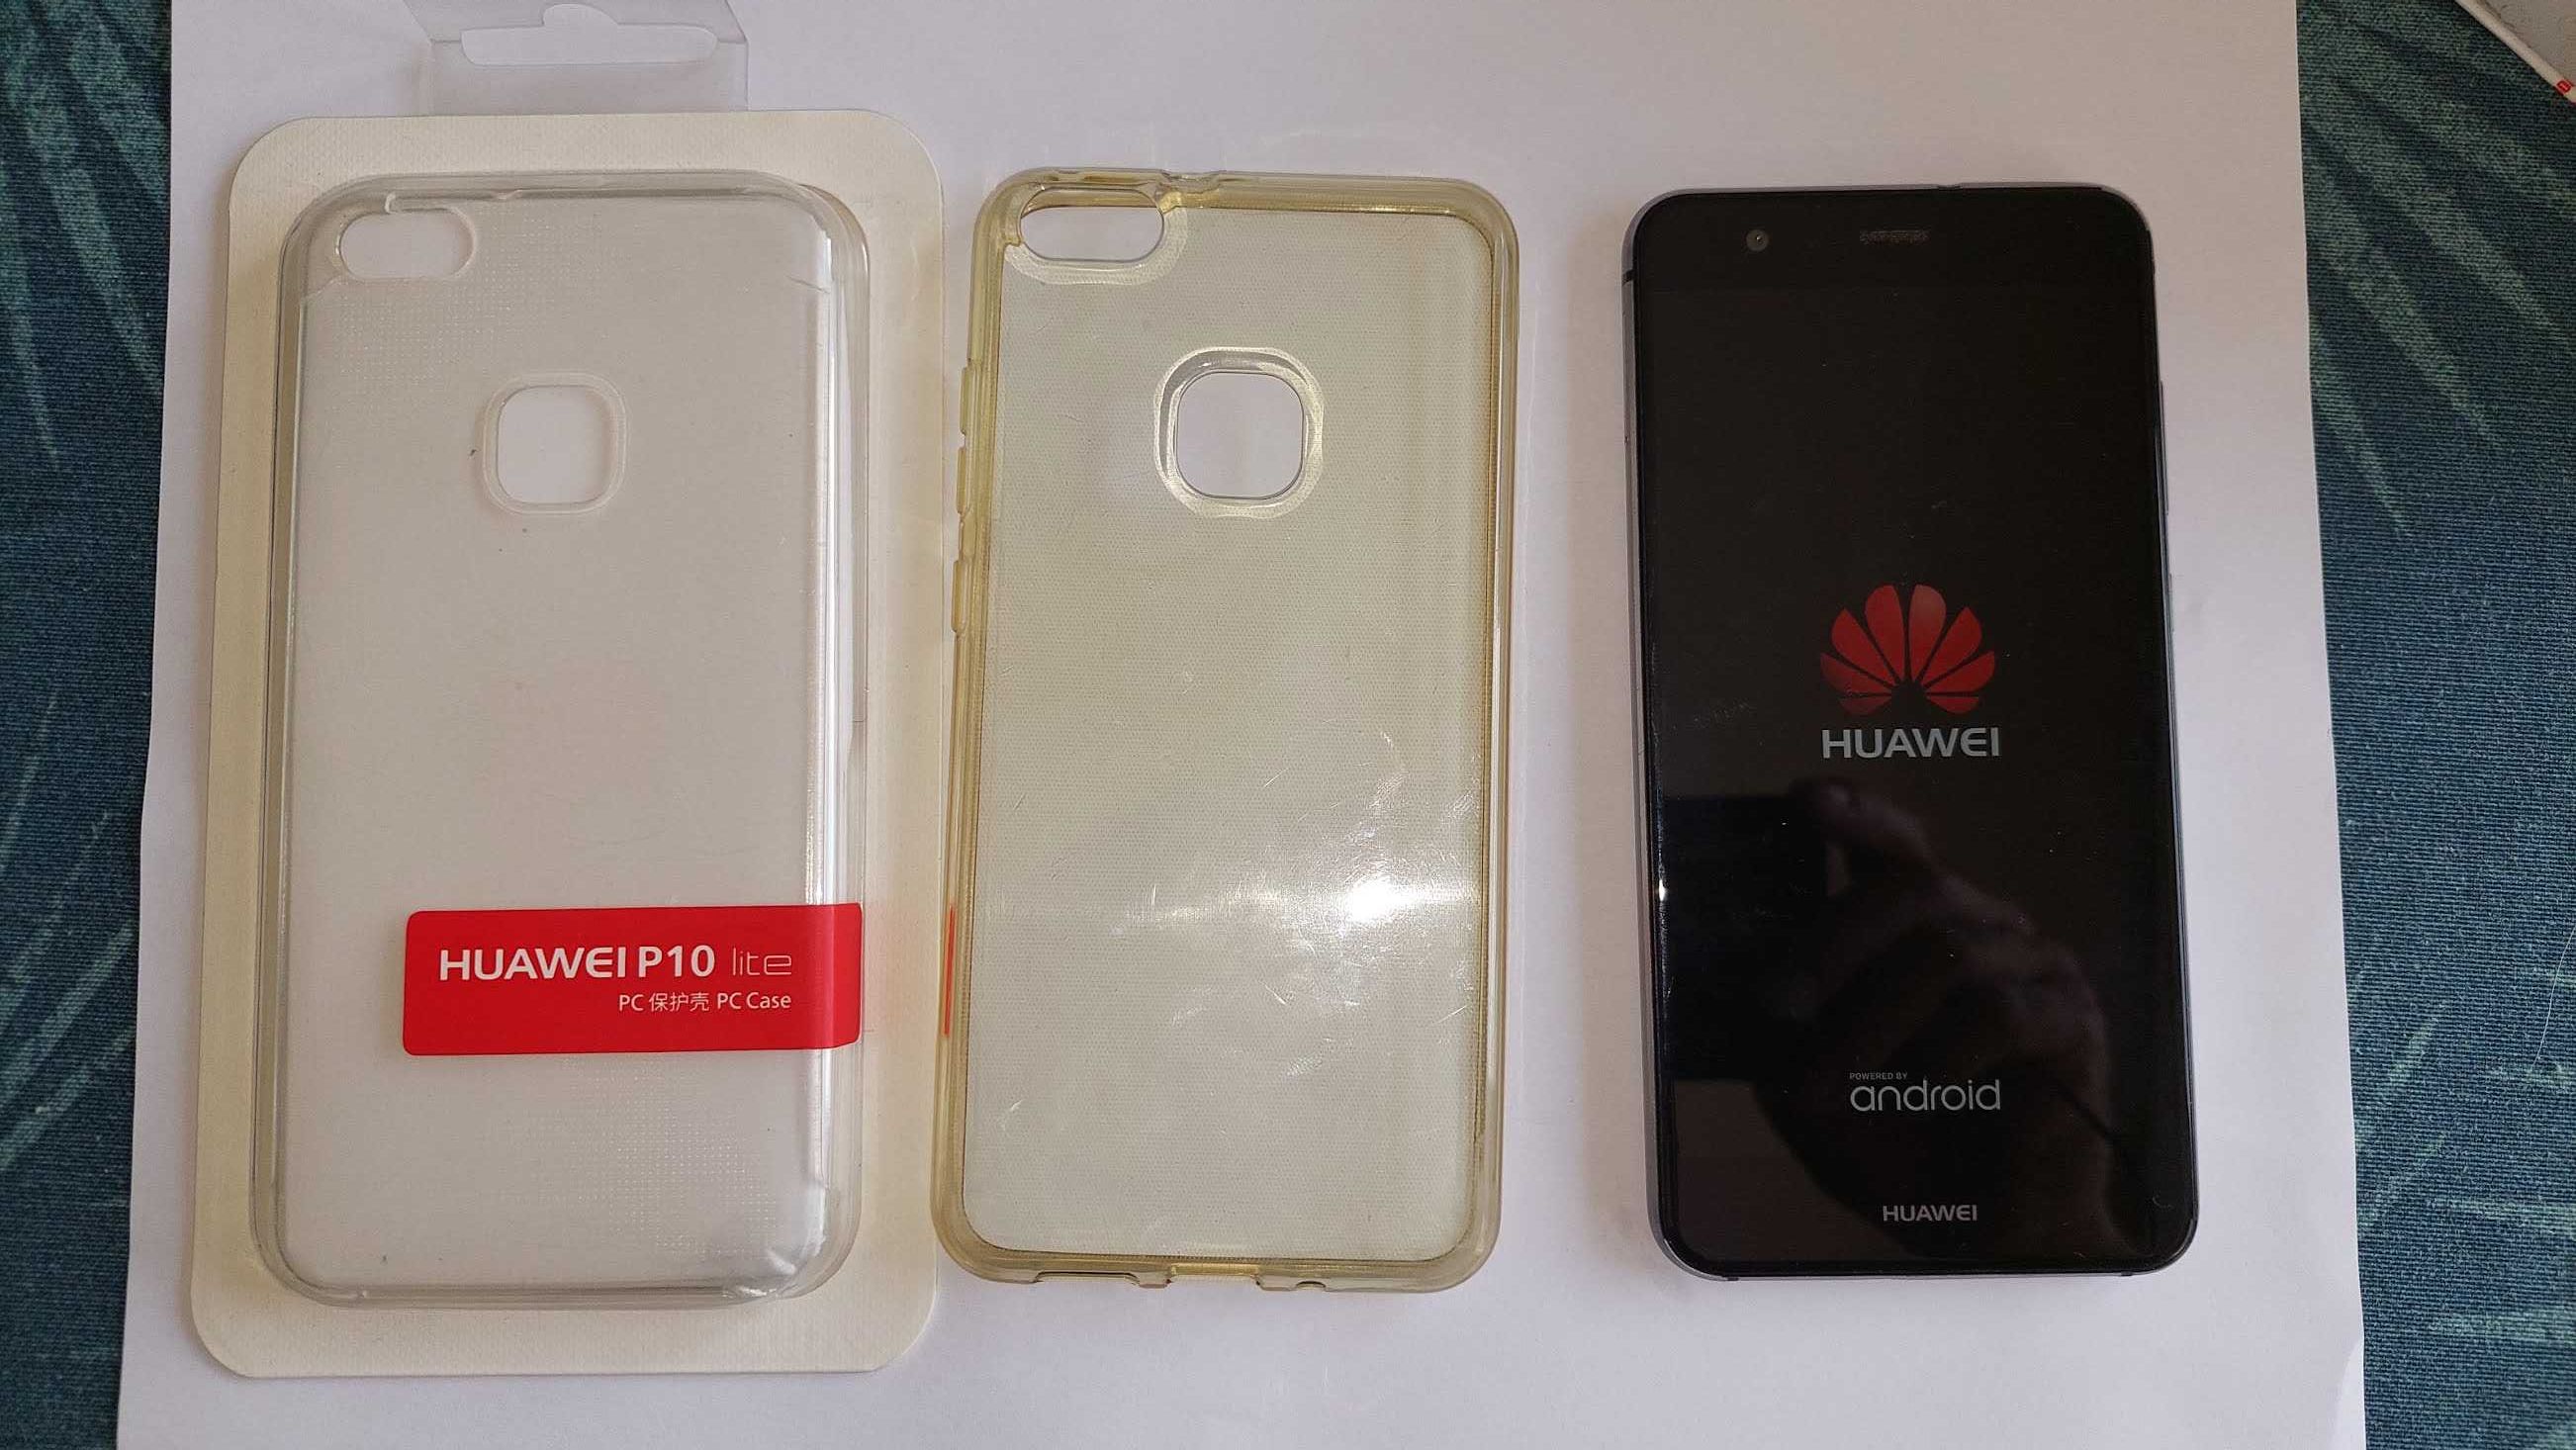 Huawei P10 Lite Dual SIM